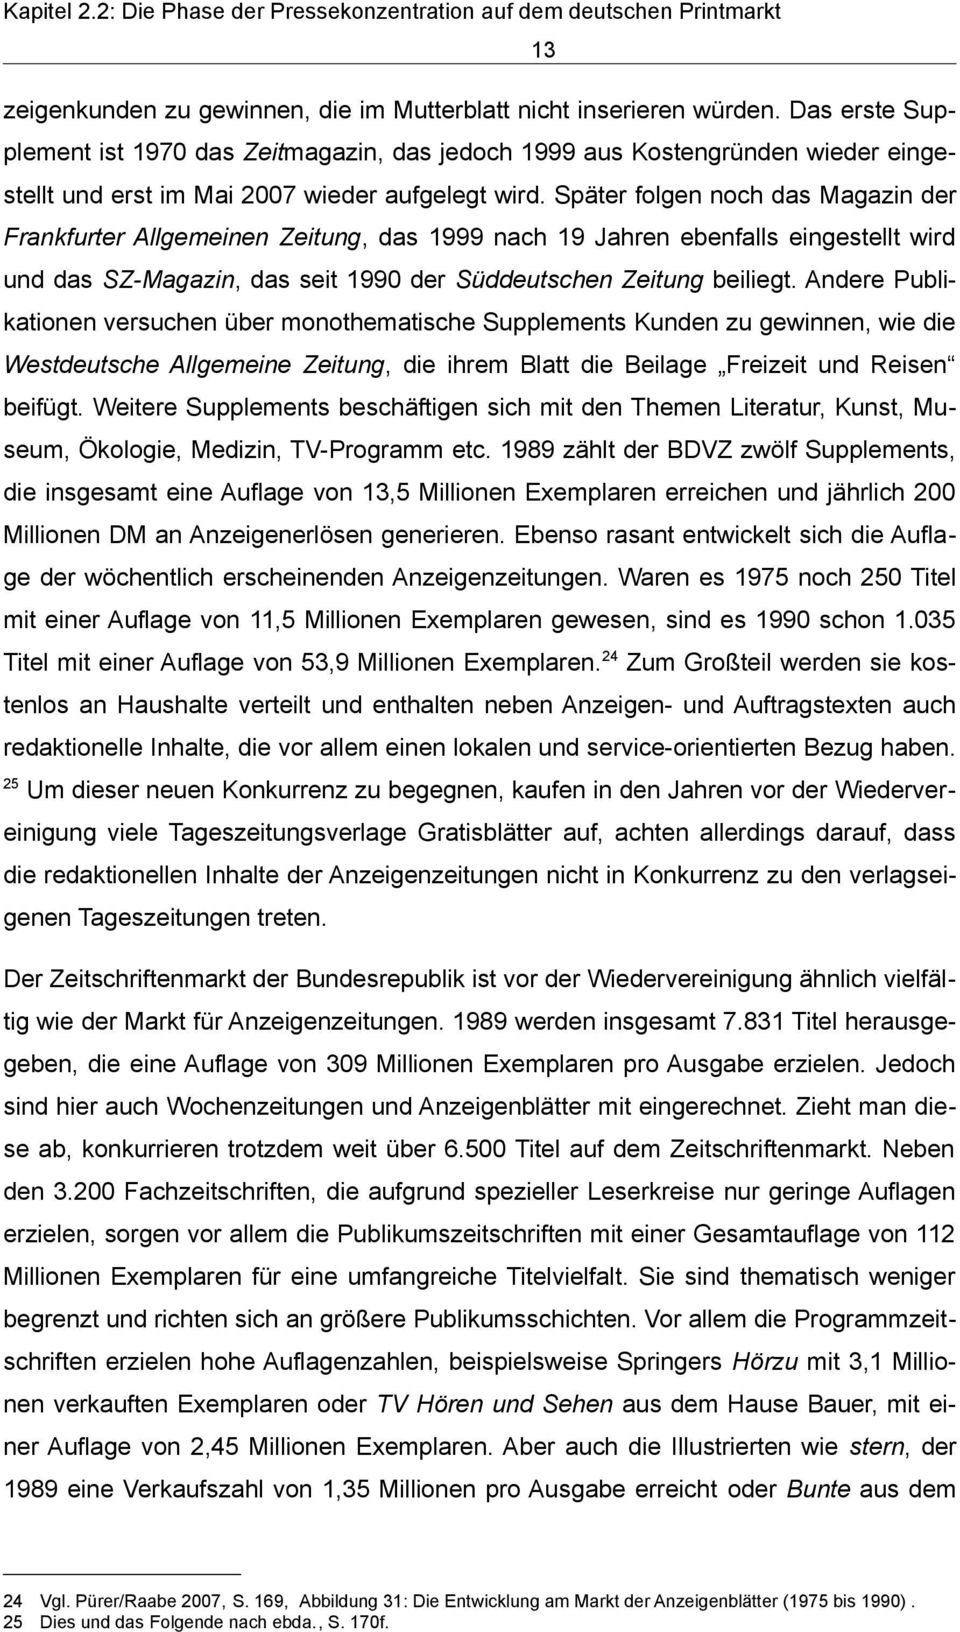 Später folgen noch das Magazin der Frankfurter Allgemeinen Zeitung, das 1999 nach 19 Jahren ebenfalls eingestellt wird und das SZ-Magazin, das seit 1990 der Süddeutschen Zeitung beiliegt.